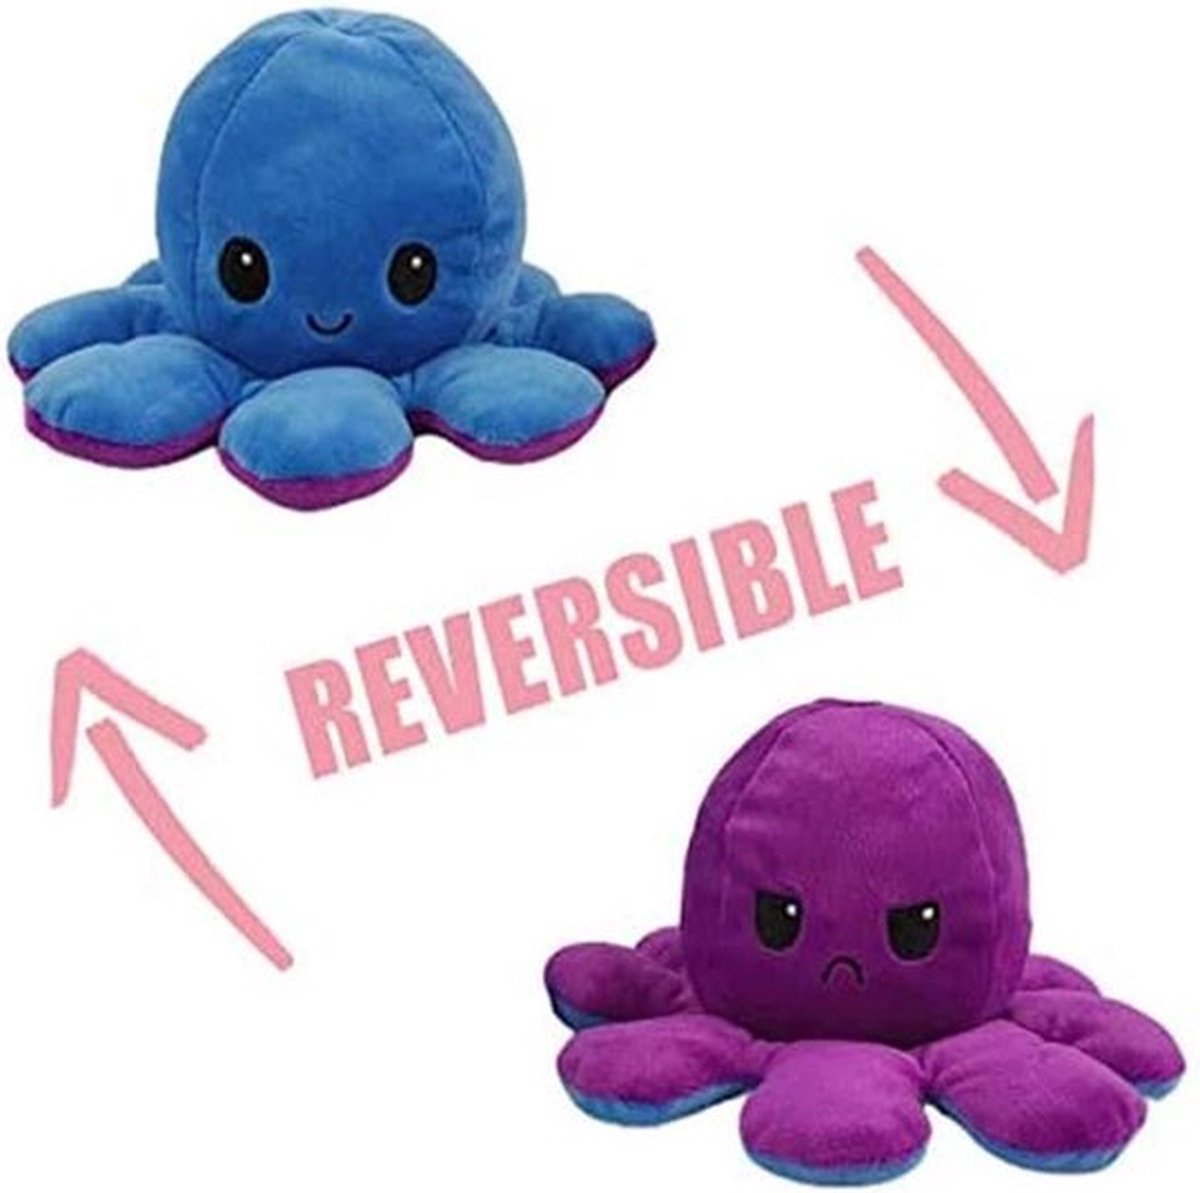 Octopus knuffel - Mood knuffel - Roze - Blauw - Blij/Boos knuffel - Omkeerbaar - Emotie knuffel - Merkloos